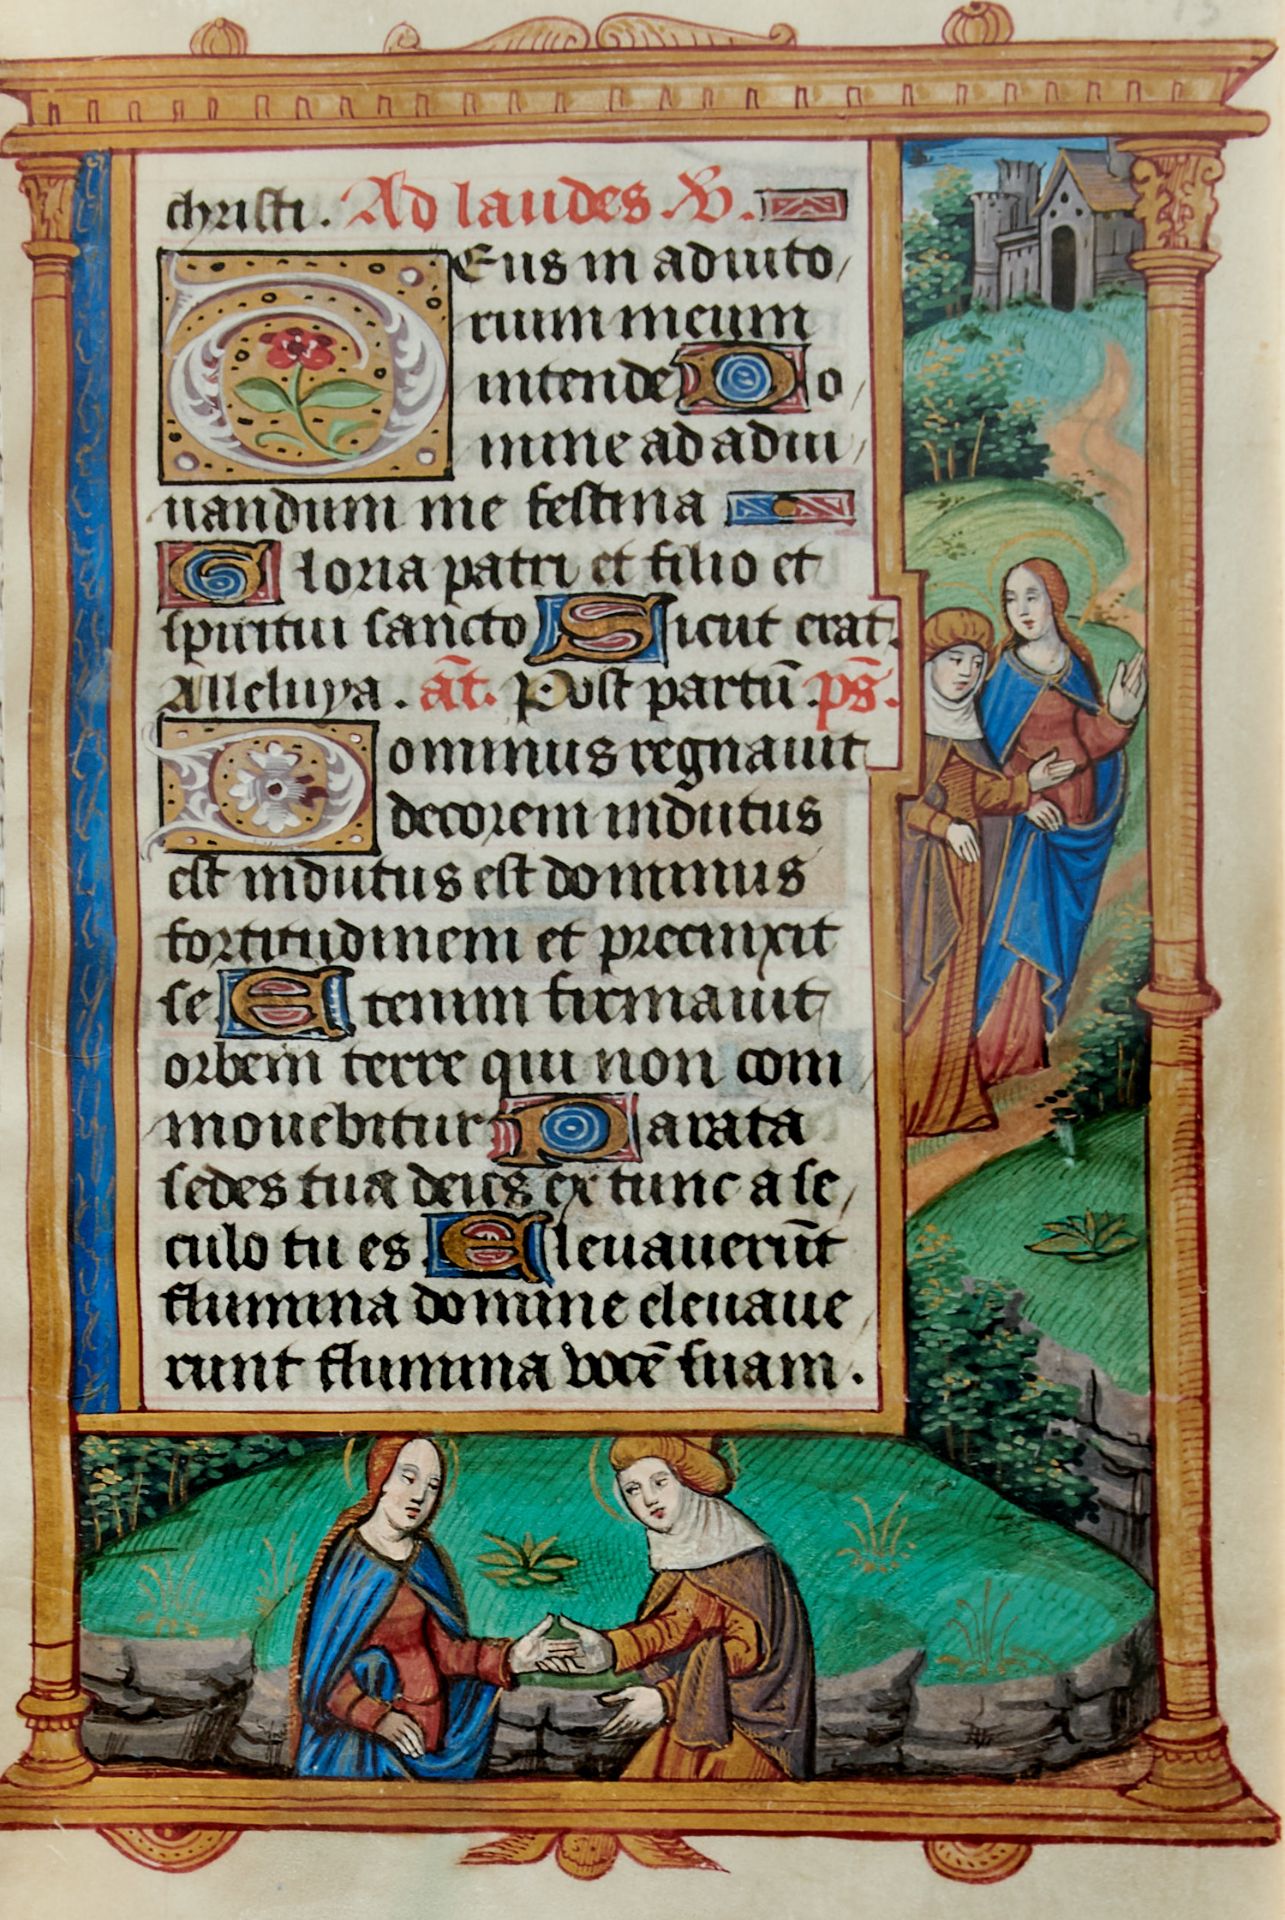 Pariser Stundenbuch. Lateinische Handschrift auf Pergament. Paris, um 1500. Ca. 14 x 10 cm. - Bild 6 aus 26